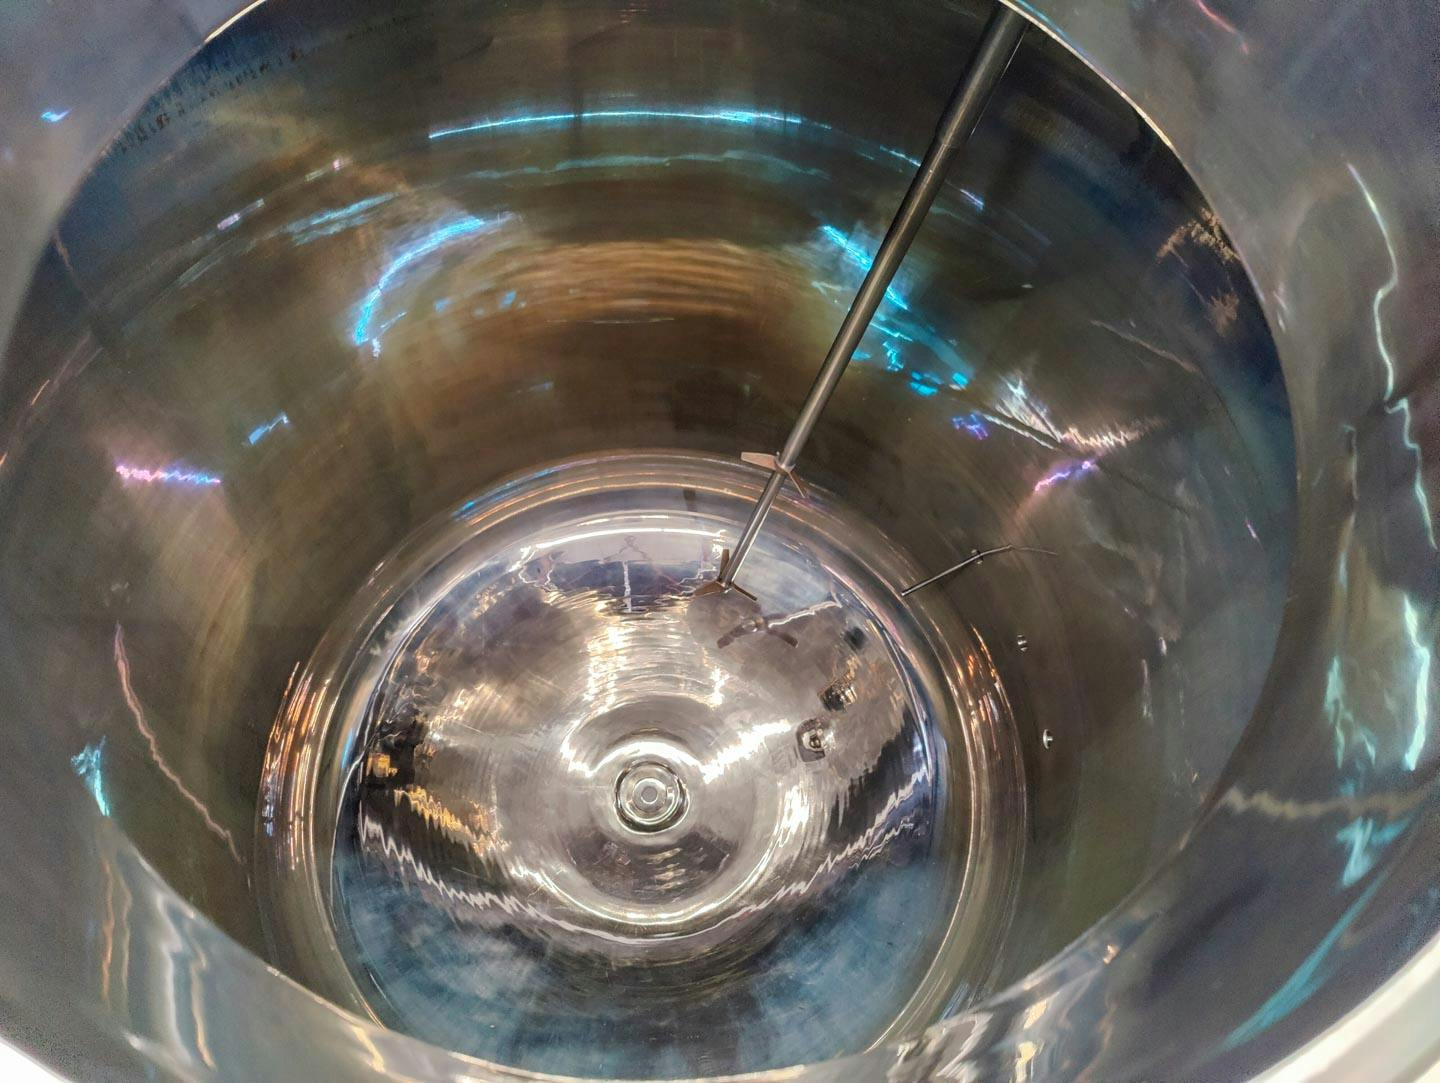 SRI Veenwouden Bioreactor 1200Ltr. - Reactor de acero inoxidable - image 10